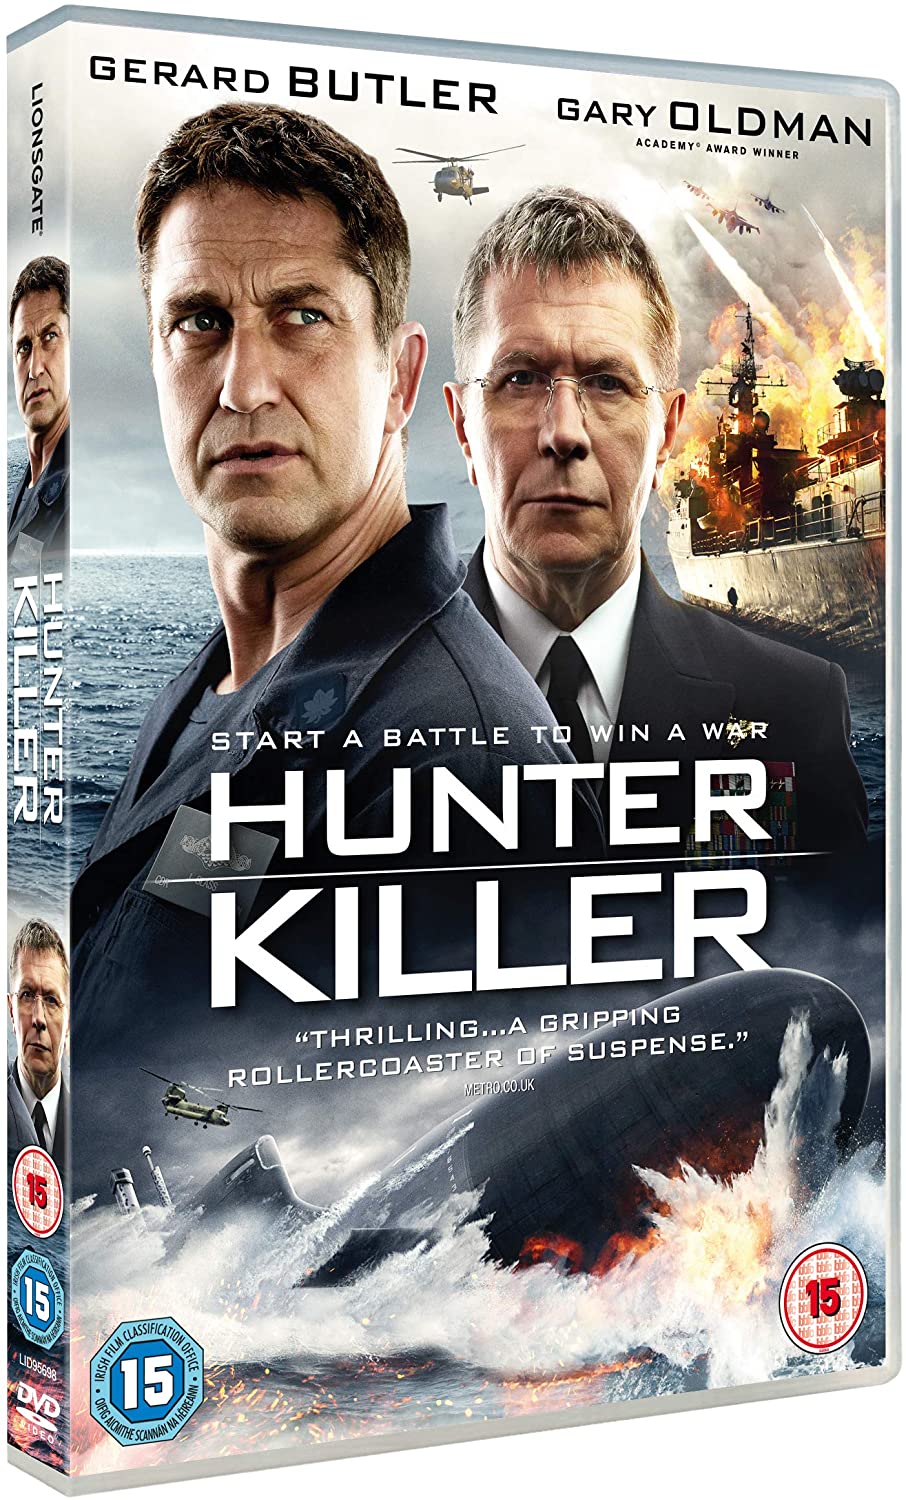 Hunter Killer - Action/Thriller [DVD]